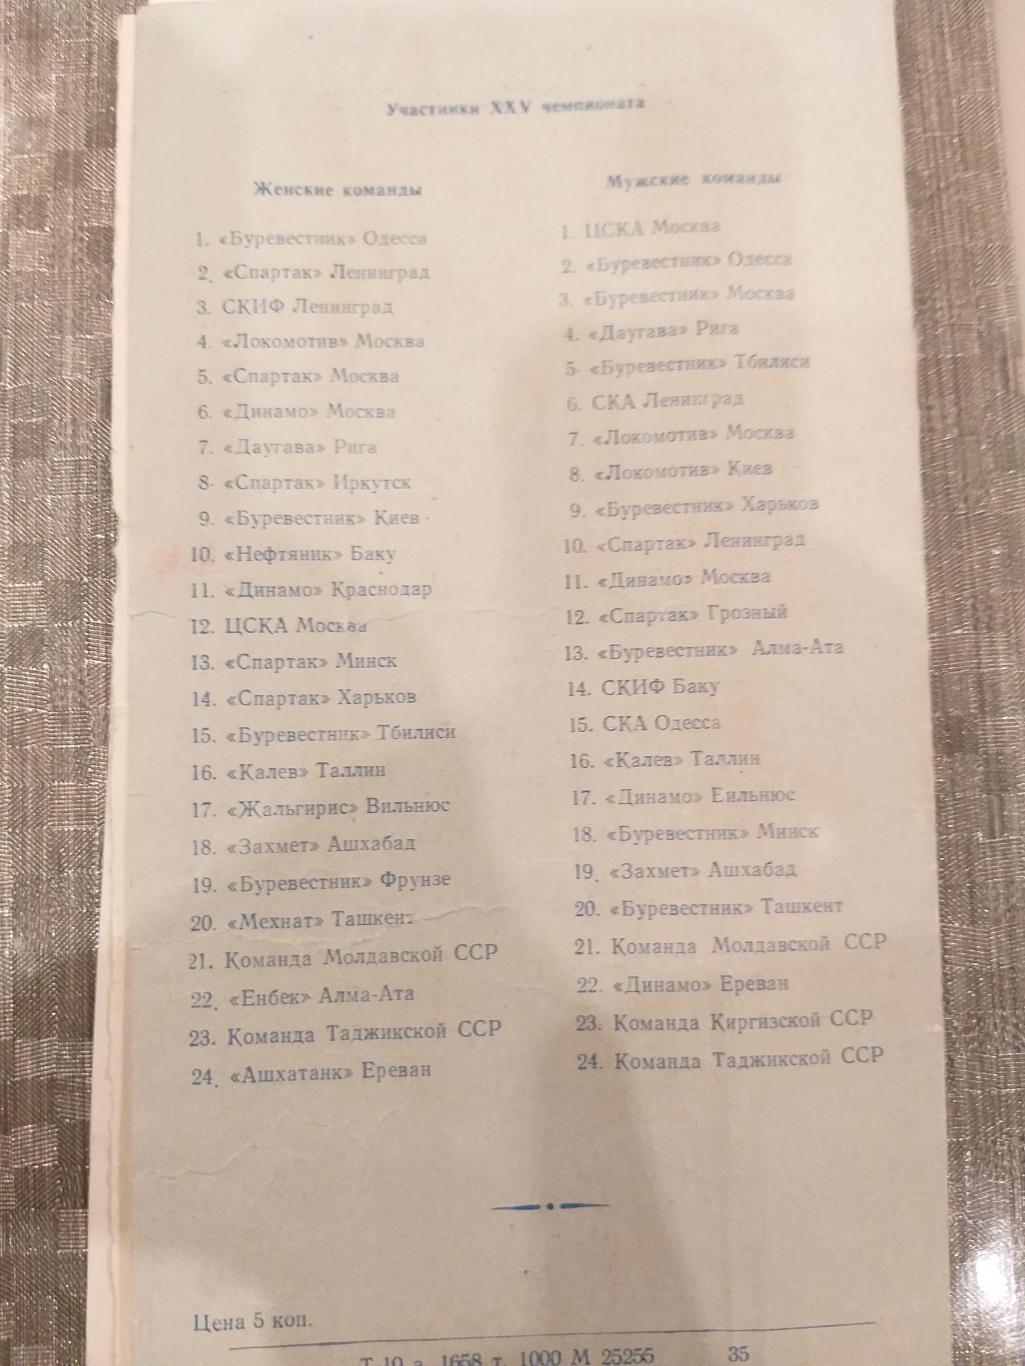 Волейбол 17-19.02.1962 Киев,Одесса,Спартак(Москва), Даугава,Харьков,Динамо(Москв а 2